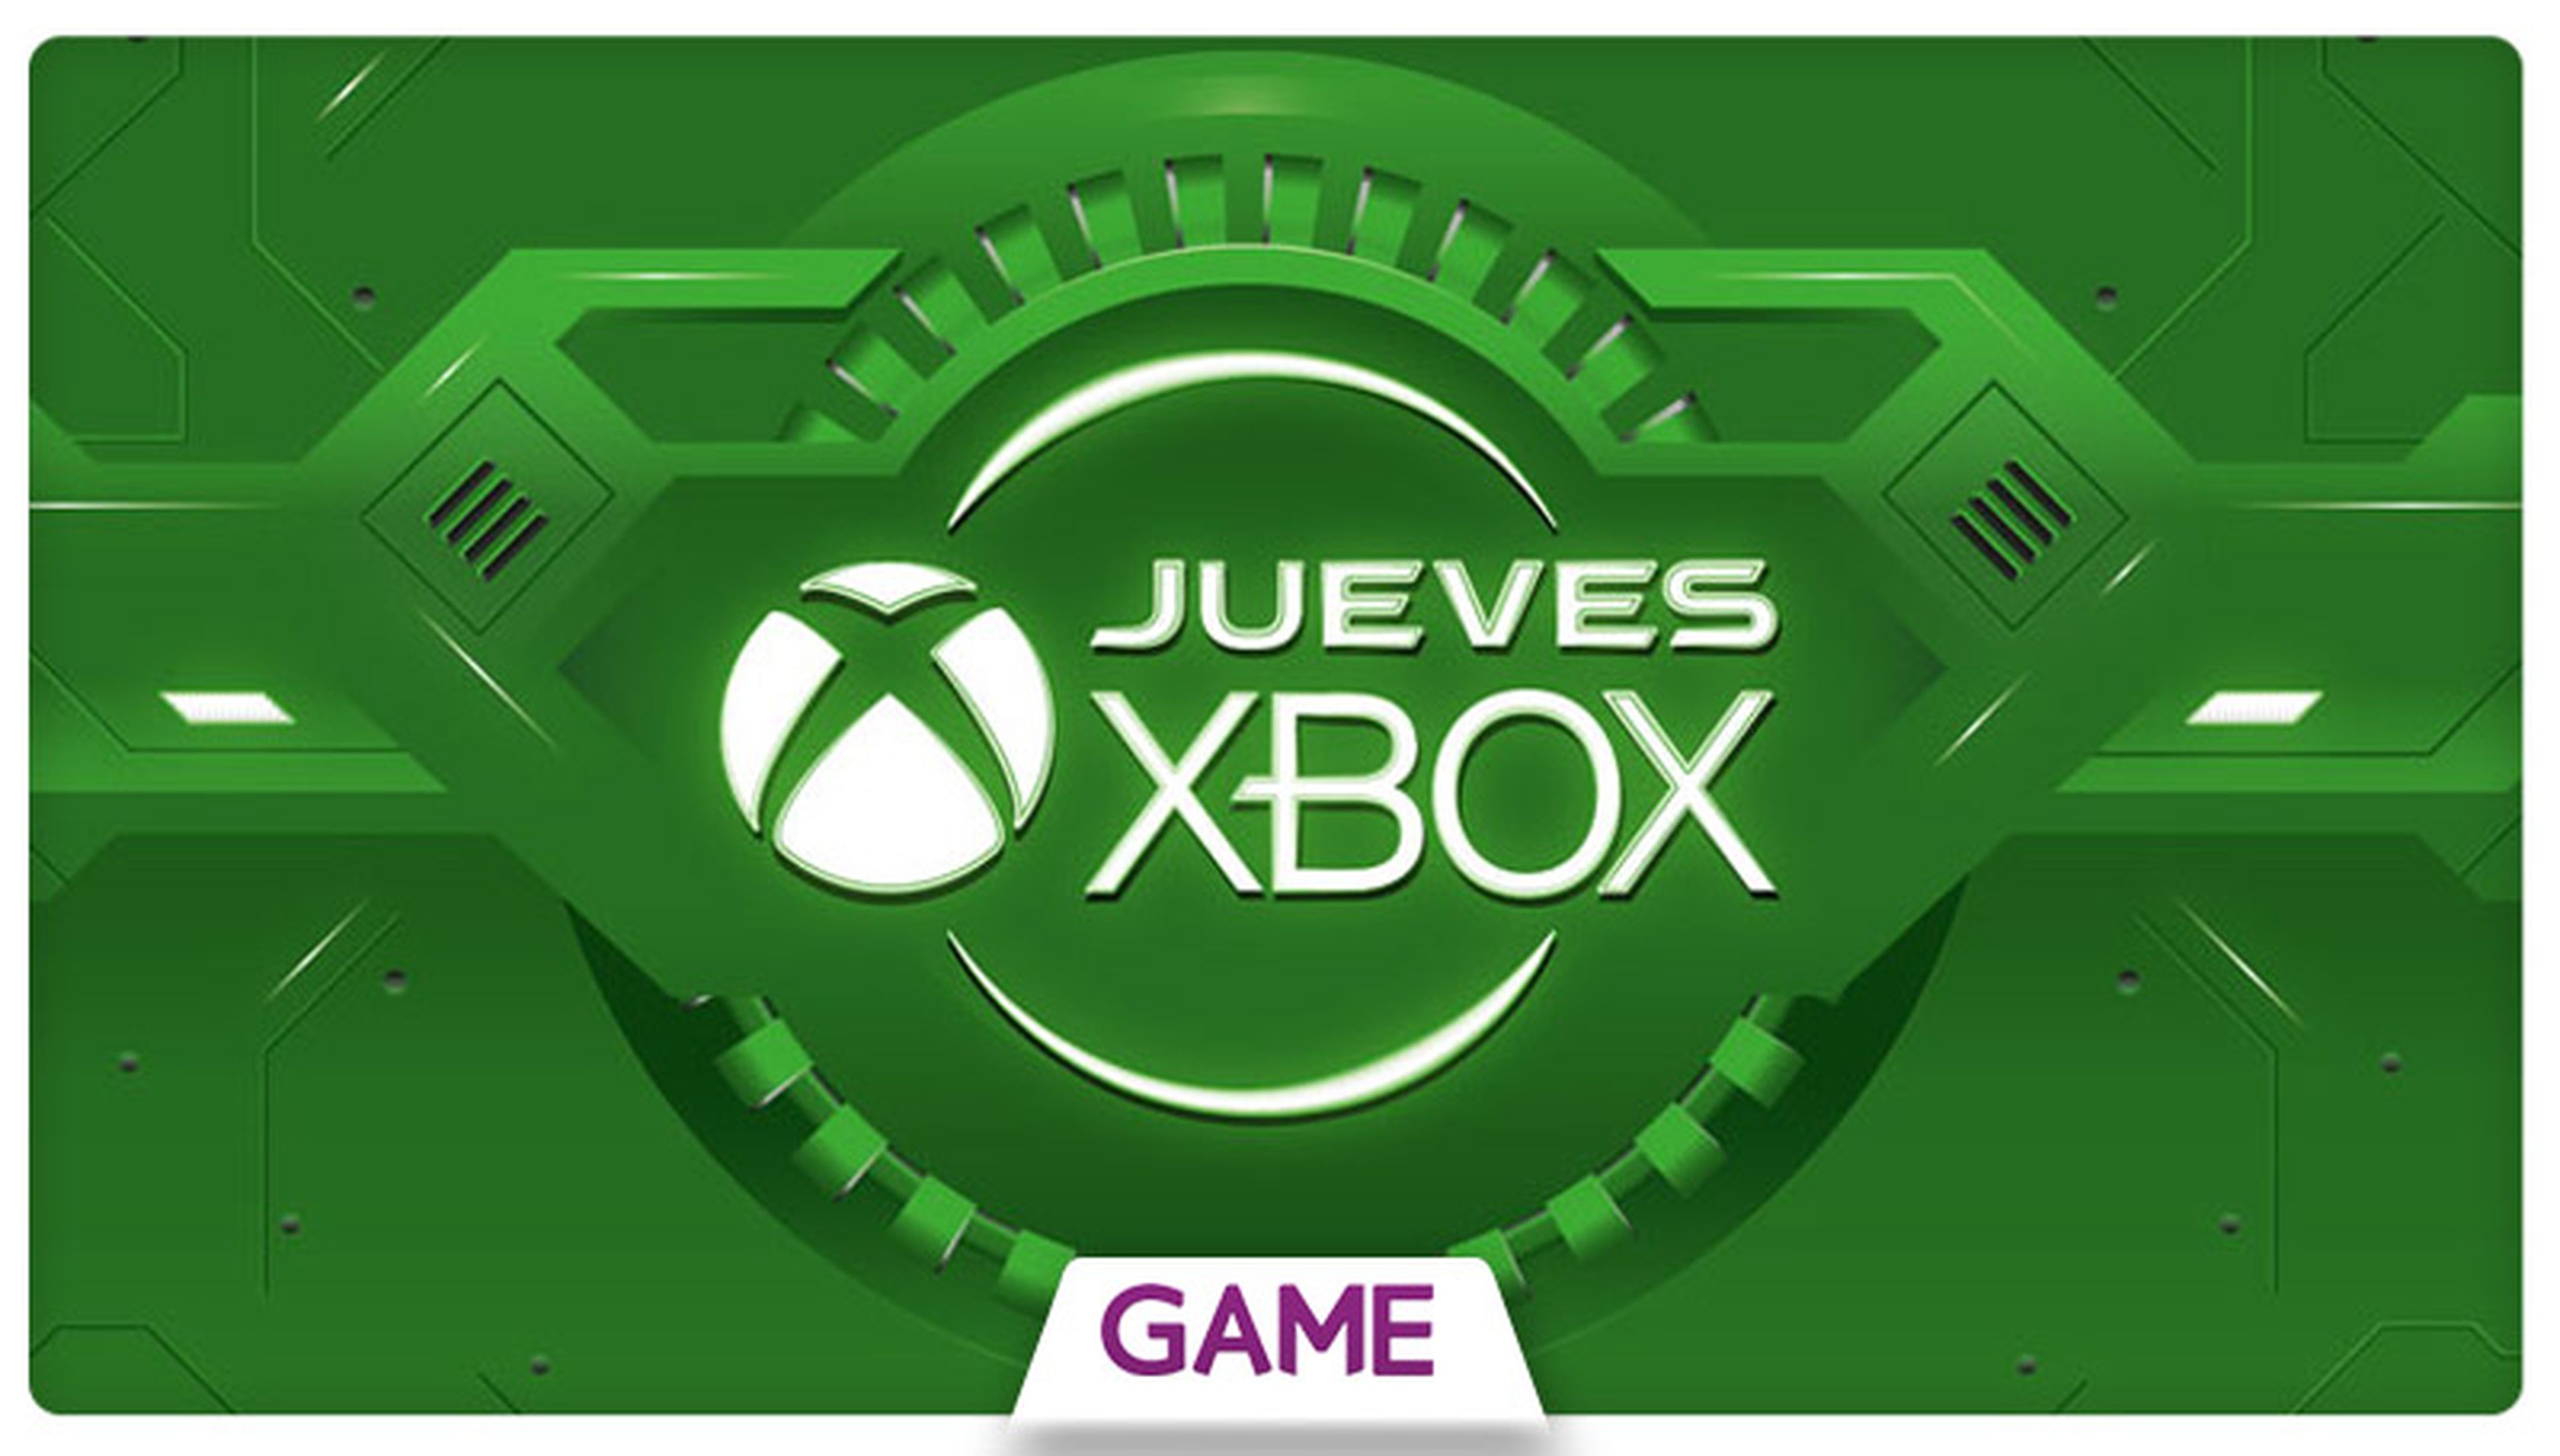 Jueves Xbox en GAME: Ofertas del 28/04/2016